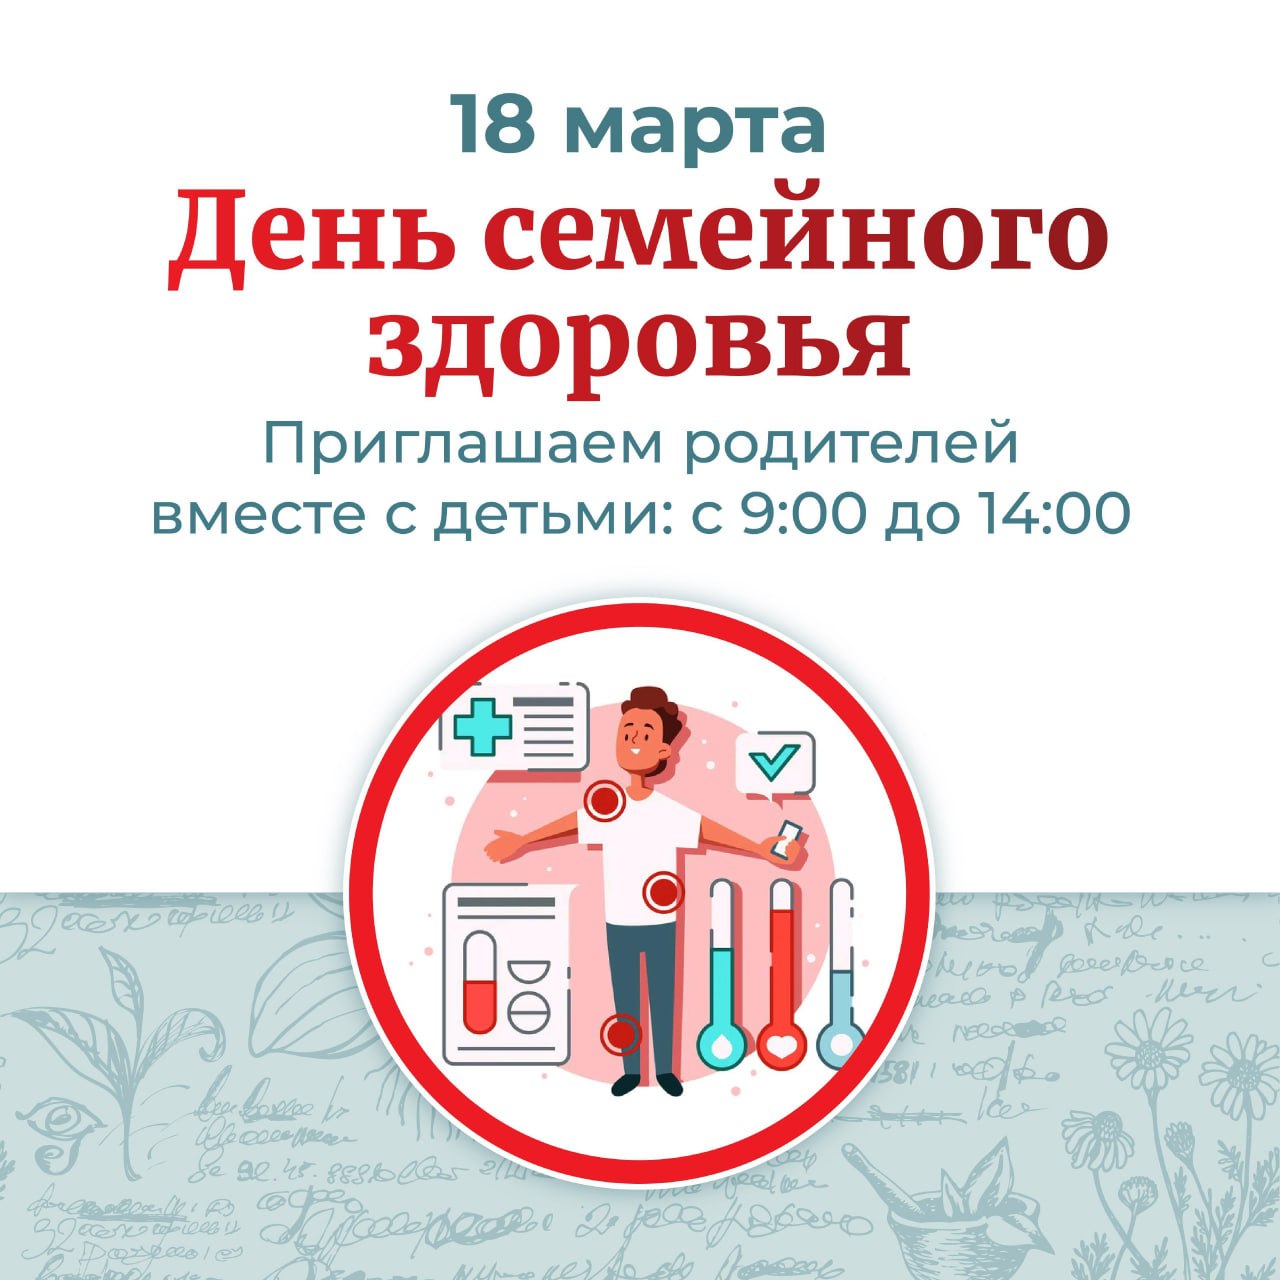 Приглашаем жителей городских округов Щёлково, Фрязино и Лосино-Петровский вместе с детьми проверить здоровье